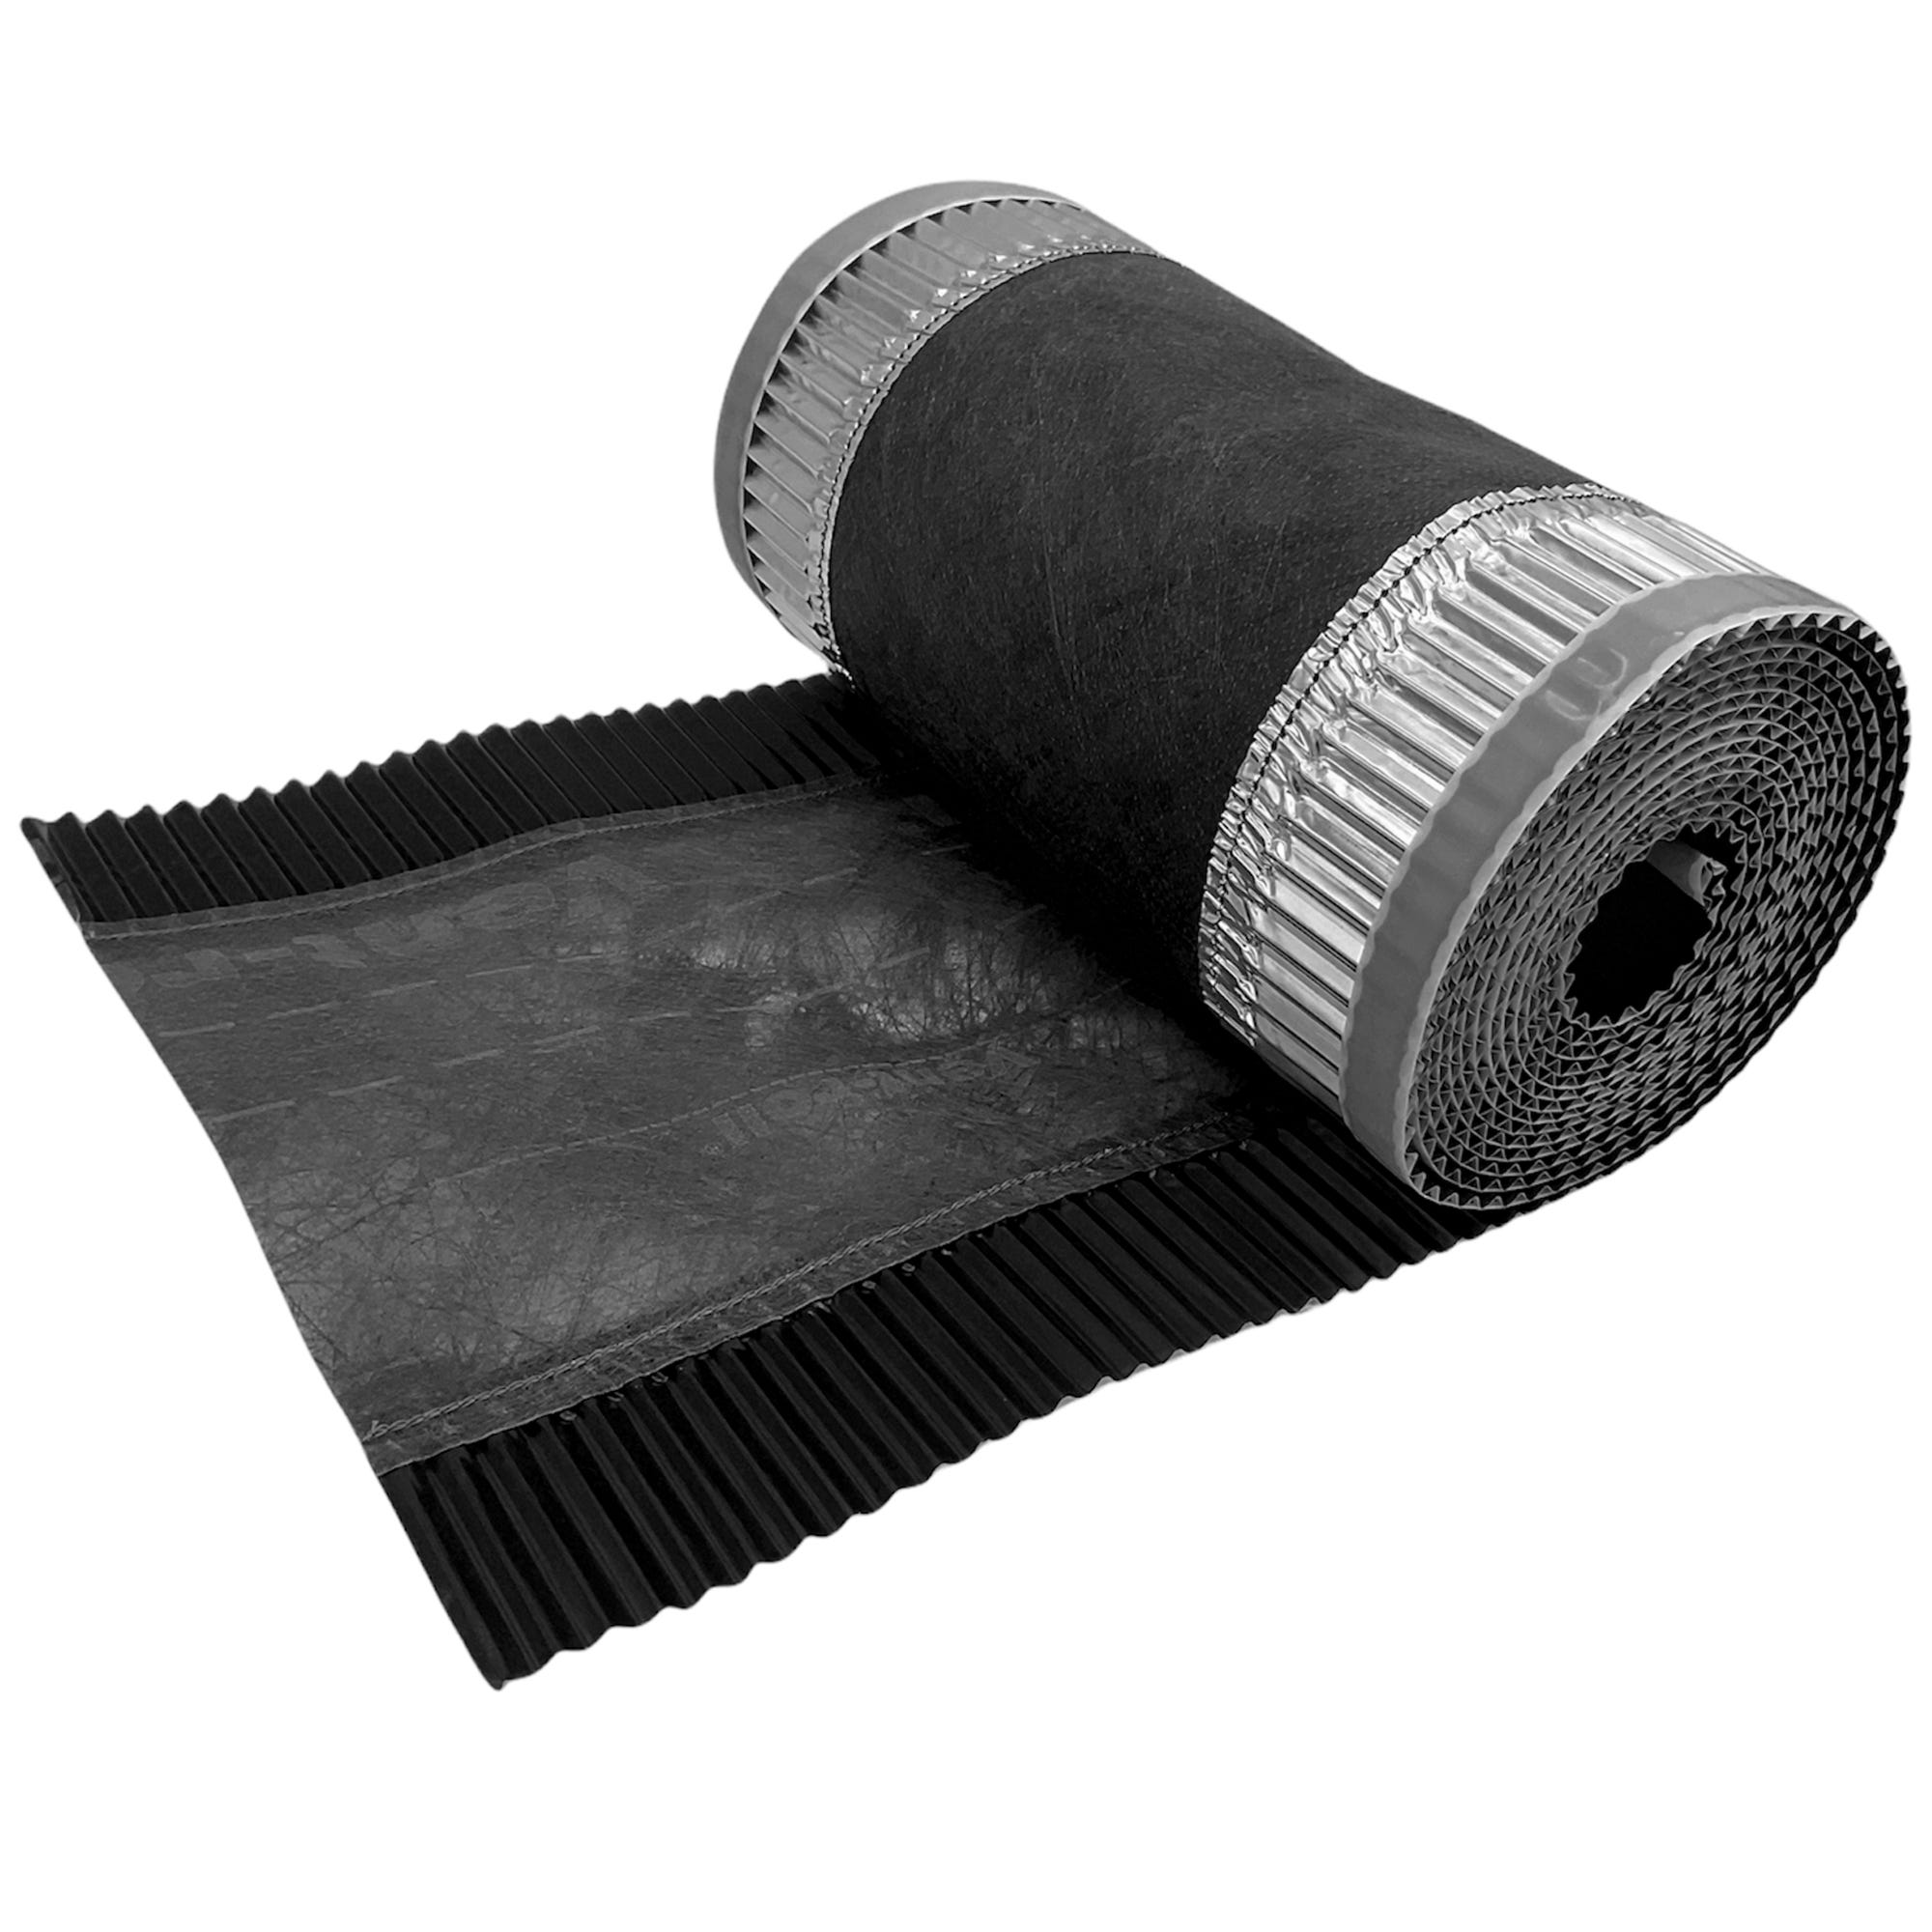 Closoir de Faîtage - Noir - 300 mm X 5 ml - Souple ventilé Aluminium et Fibre - ral 9005 0